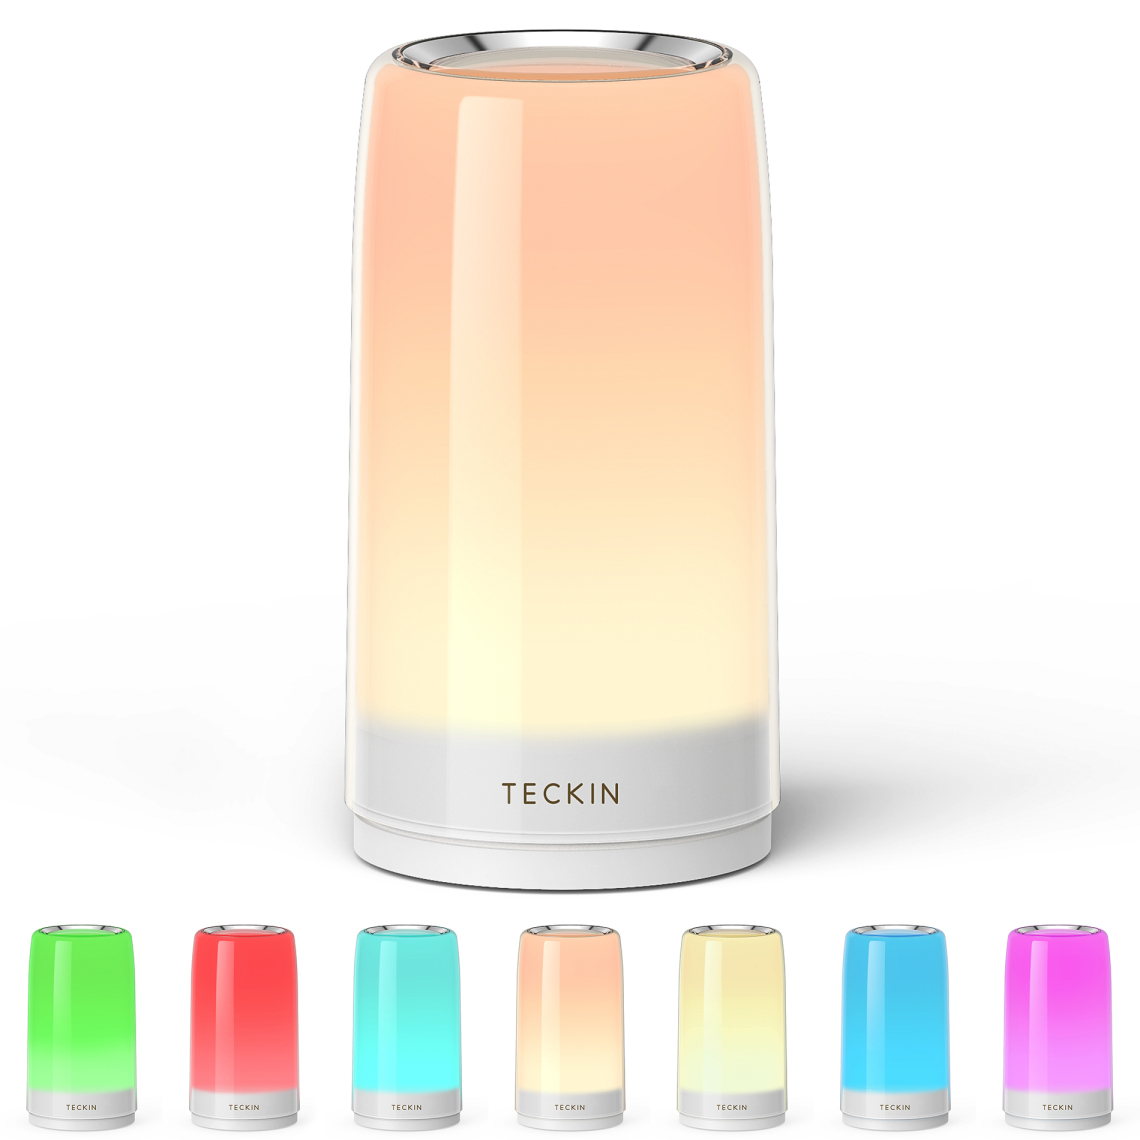 Teckin - Lampe de table Teckin DL31 Lampe de chevet LED RVB à changement multicolore sensible au toucher, lampe tactile avec lumières blanches chaudes dimmables pour chambres et salons, veilleuses pour chambre d'enfants, cadeau pour la famille - Ampoules LED